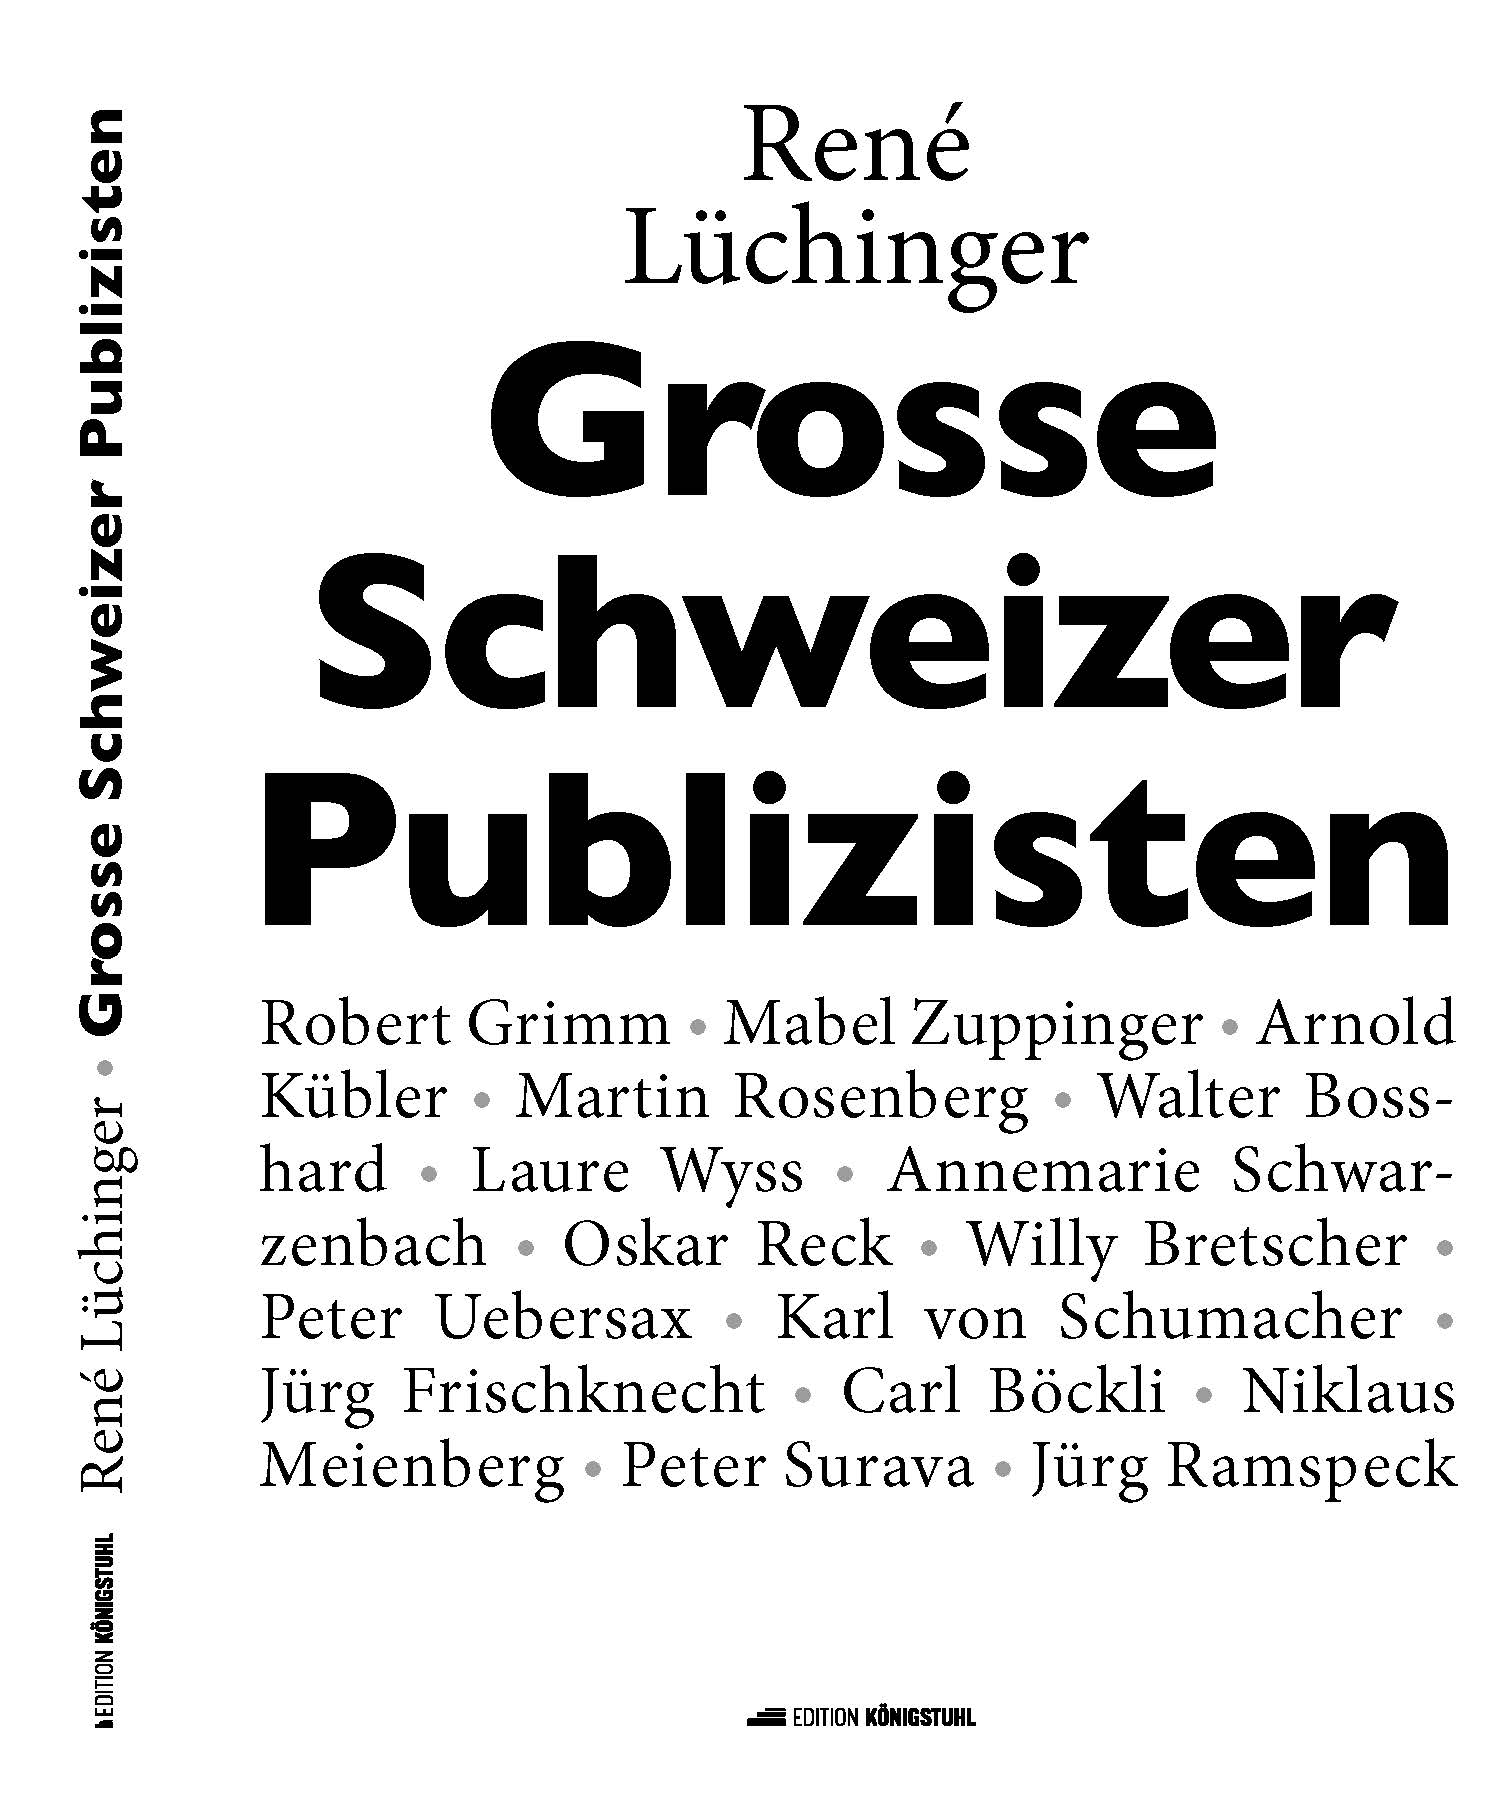 Grosse Schweizer Publizisten.